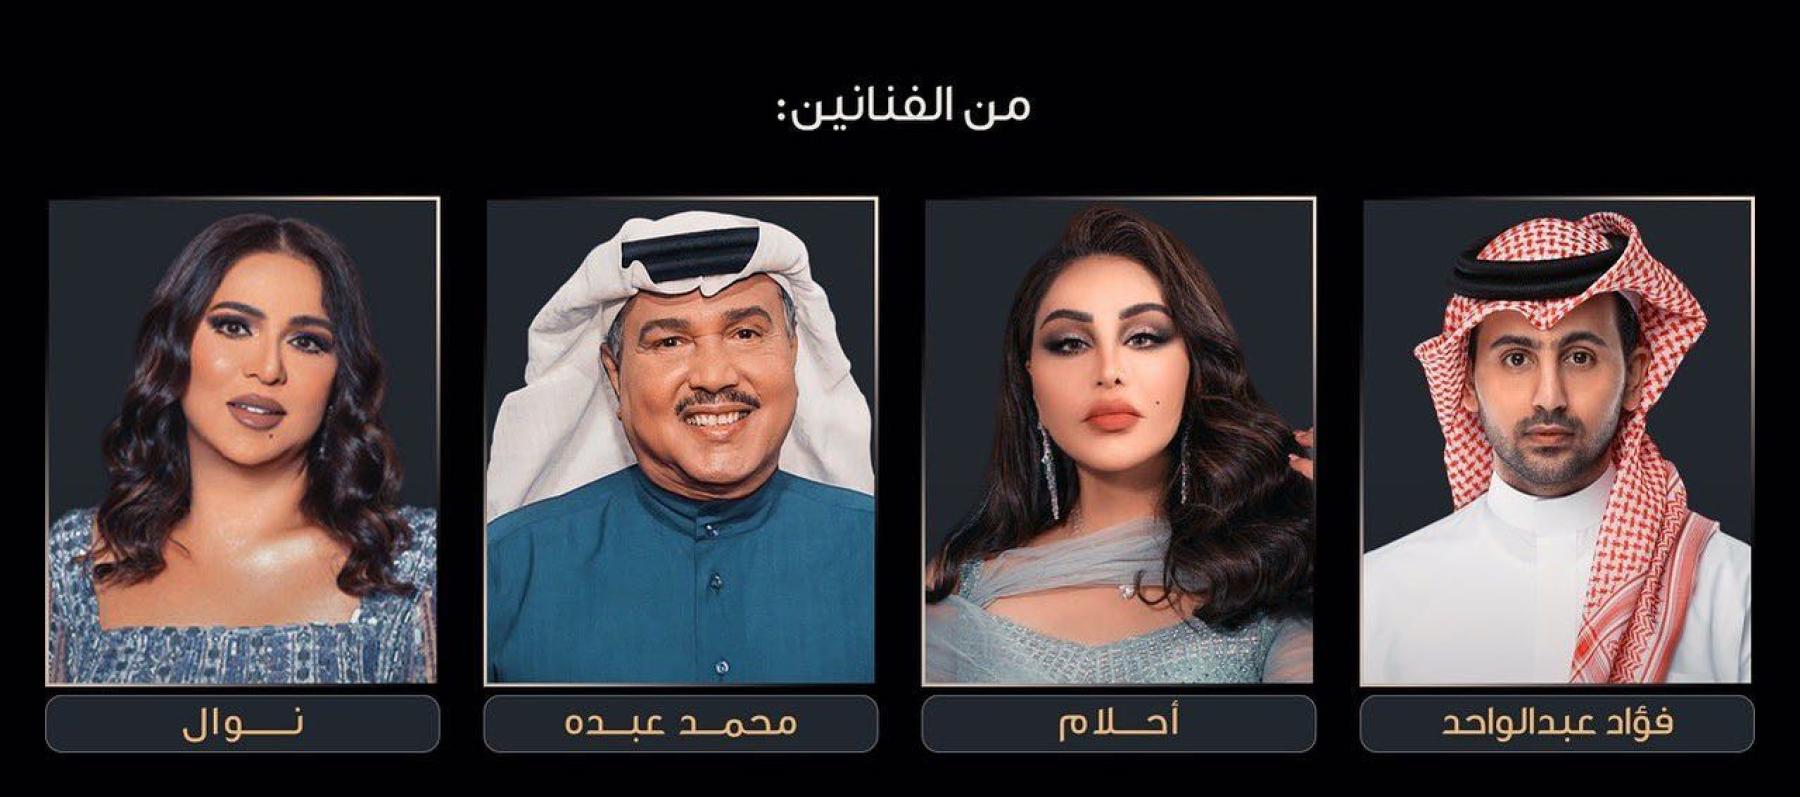 محمد عبده - أحلام - نوال الكويتية - فؤاد عبد الواحد ، إنستقرام